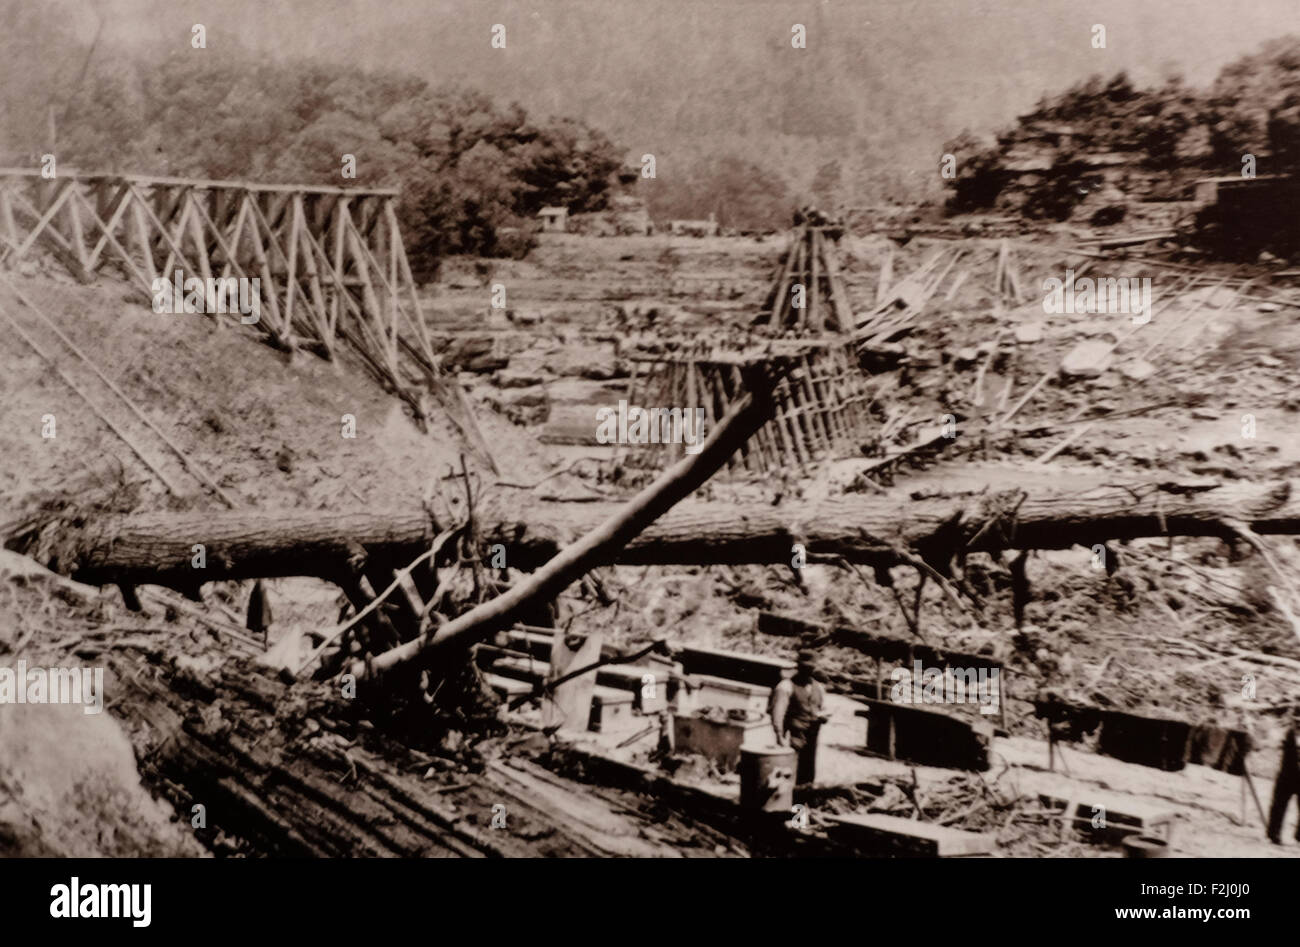 Fortschritte beim Aufbau doppelte Decked Trestle - 80 Fuß hoch - Gesamtlänge 400 Fuß - gebaut in 5 Tagen nach Holz empfangen wurde - wieder aufgenommen Regelverkehr 14 Tage nach der Flut - 14. Juni 1889 Stockfoto